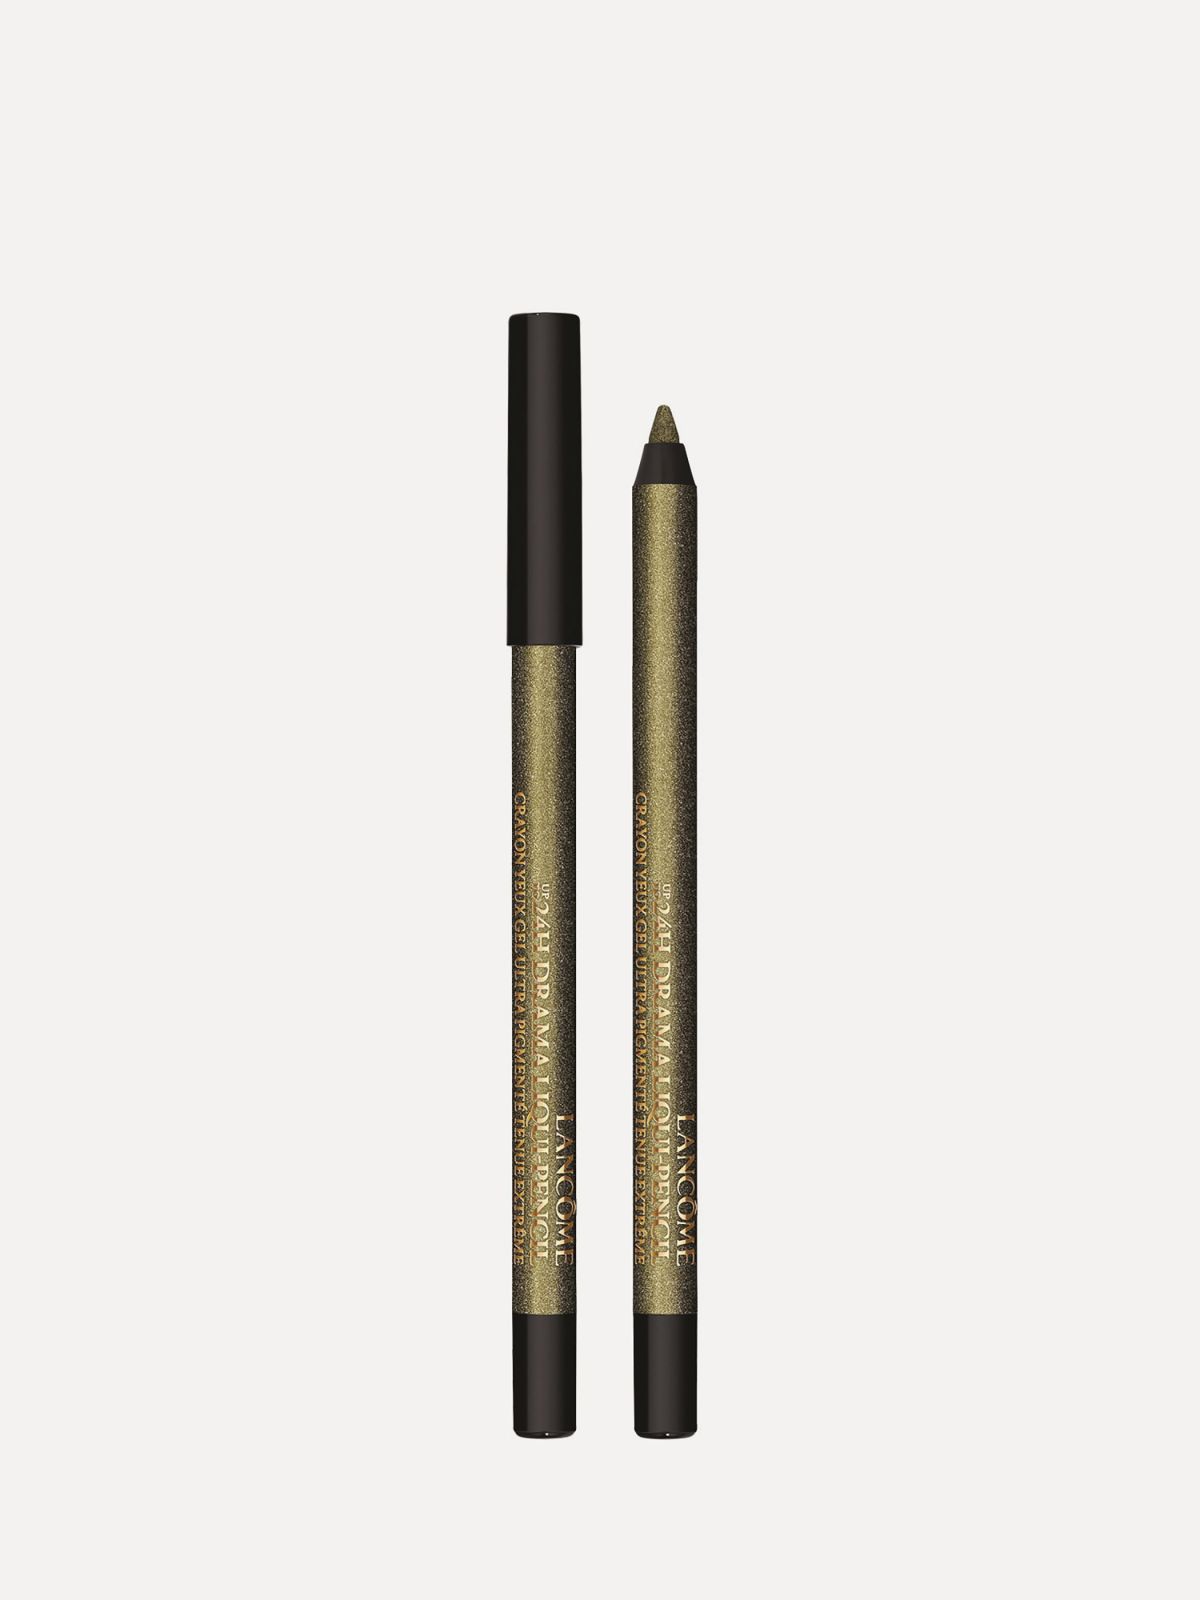  עפרון עיניים 24H Drama Liqui-Pencil של LANCOME